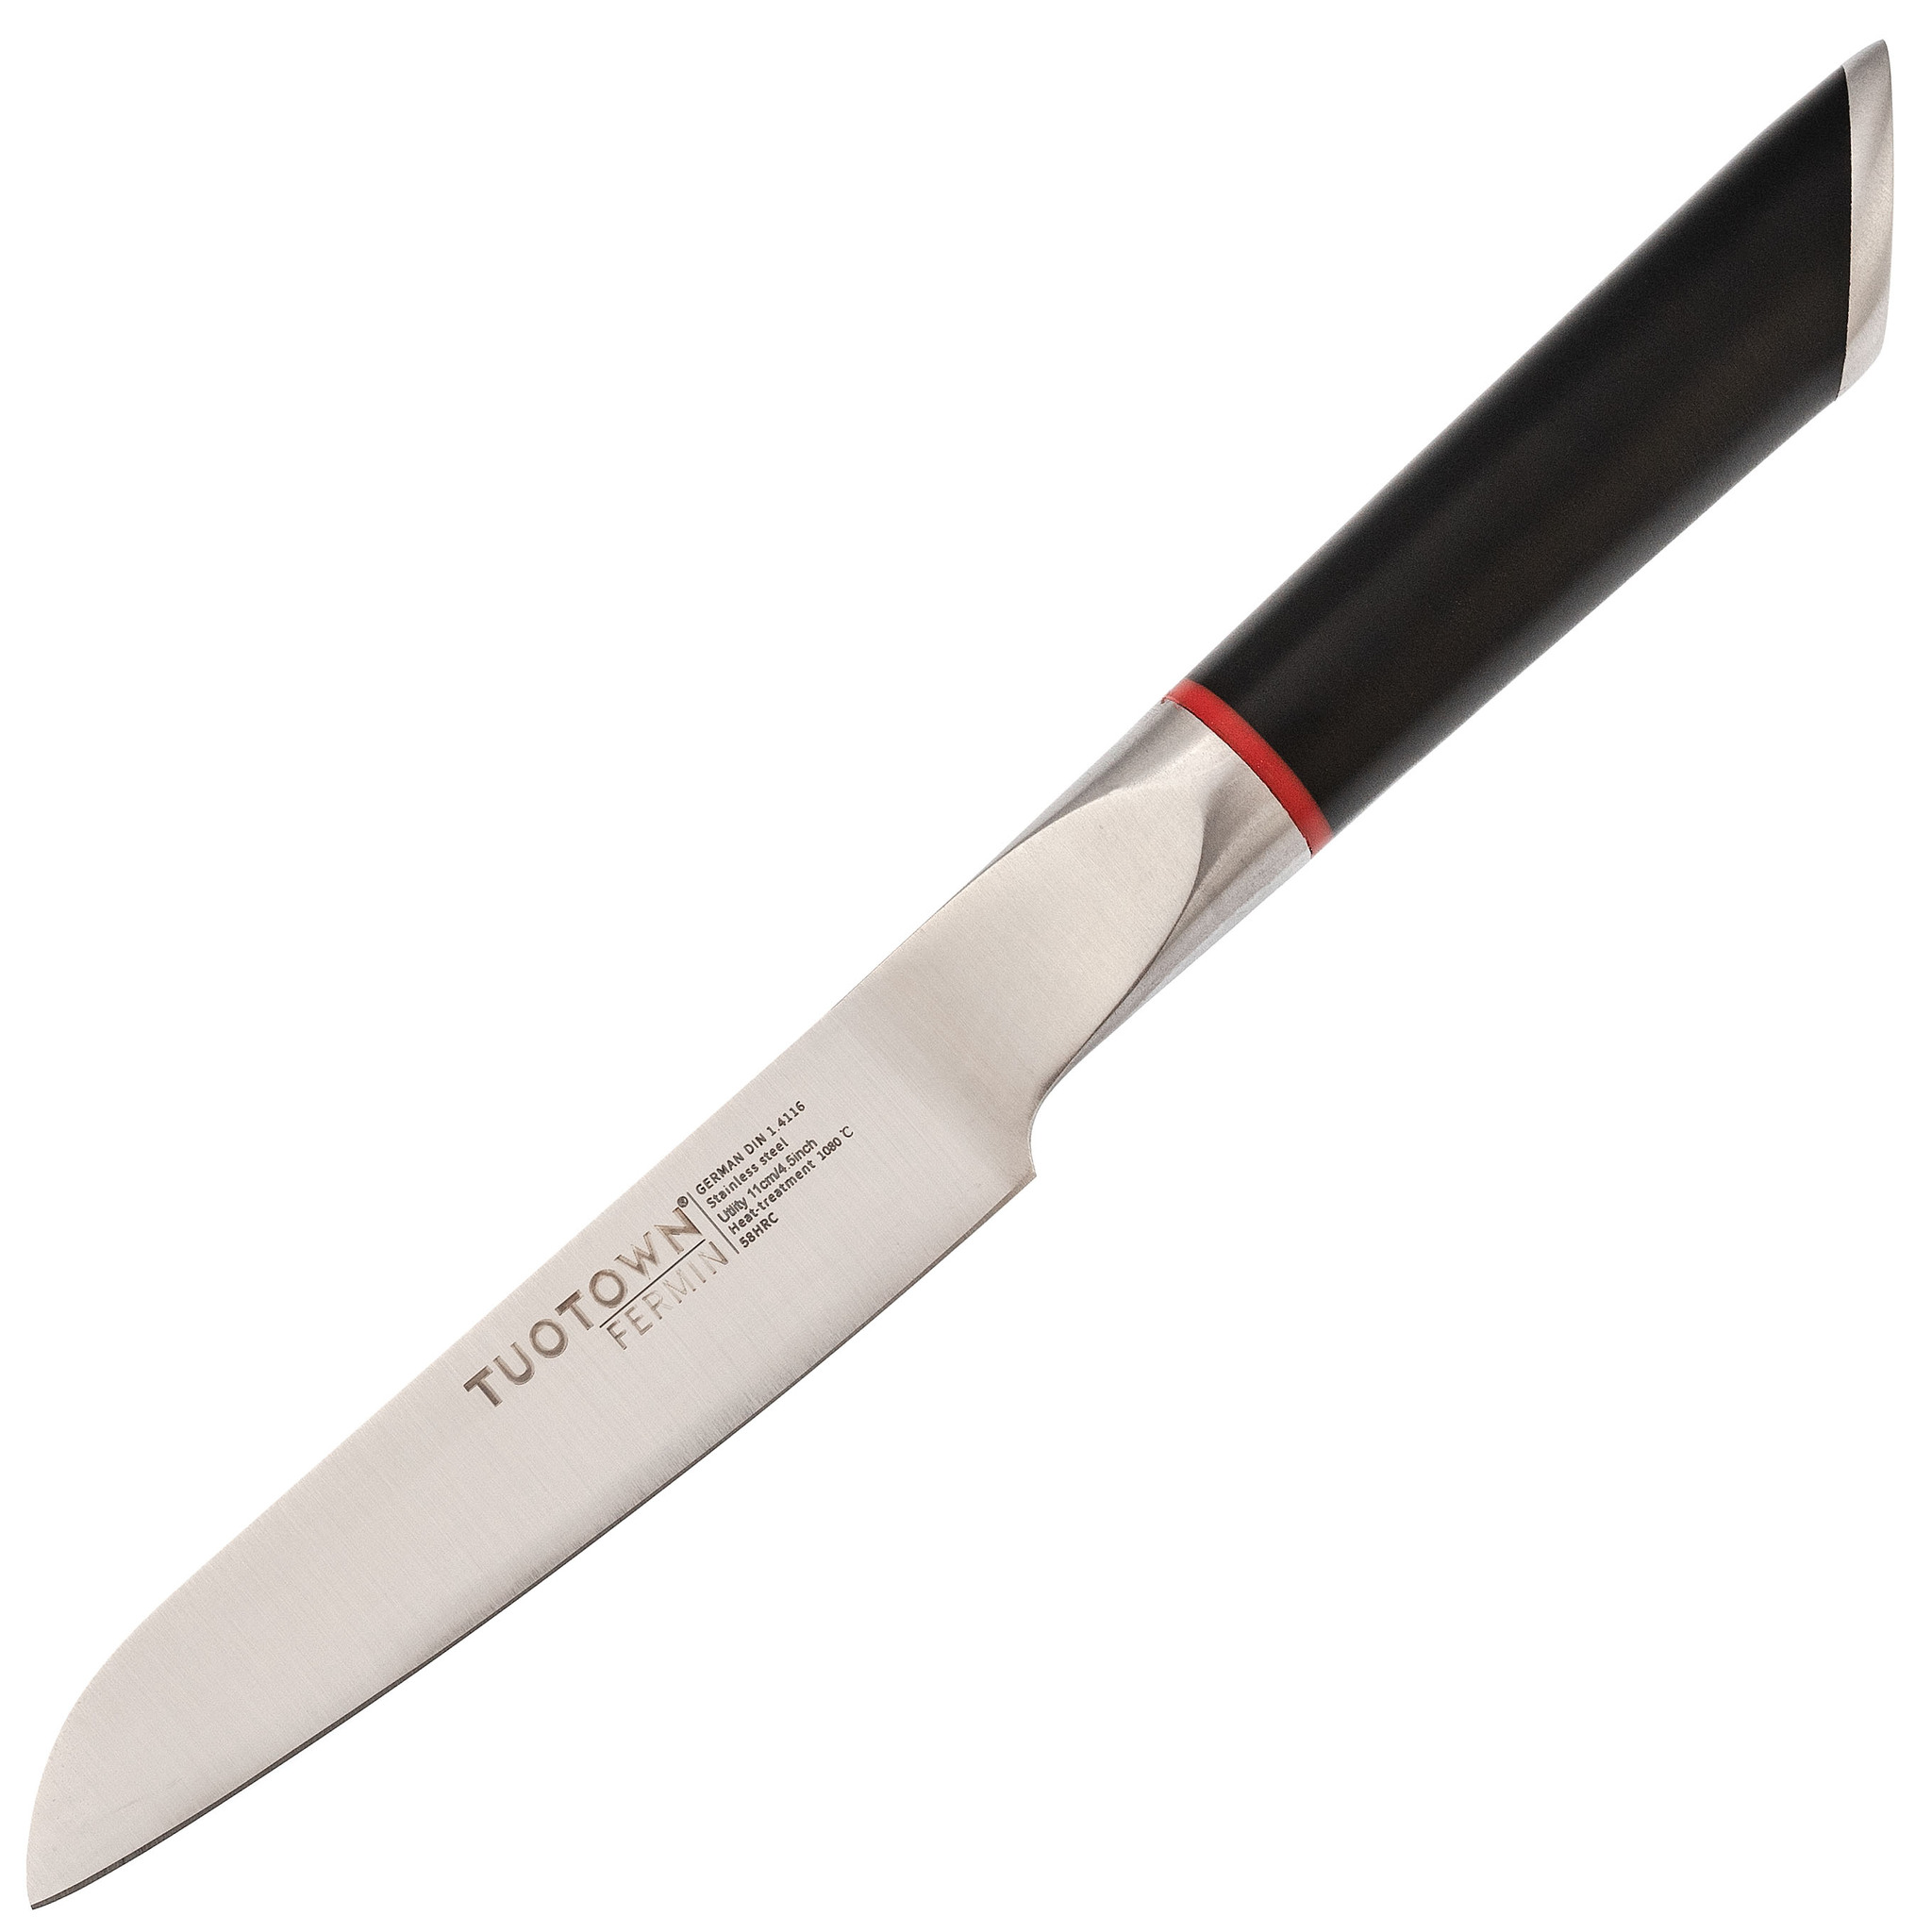 Кухонный нож универсальный, Tuotown серия Fermin, сталь 1.4116, рукоять пластик кухонный нож для разделки мяса ladina